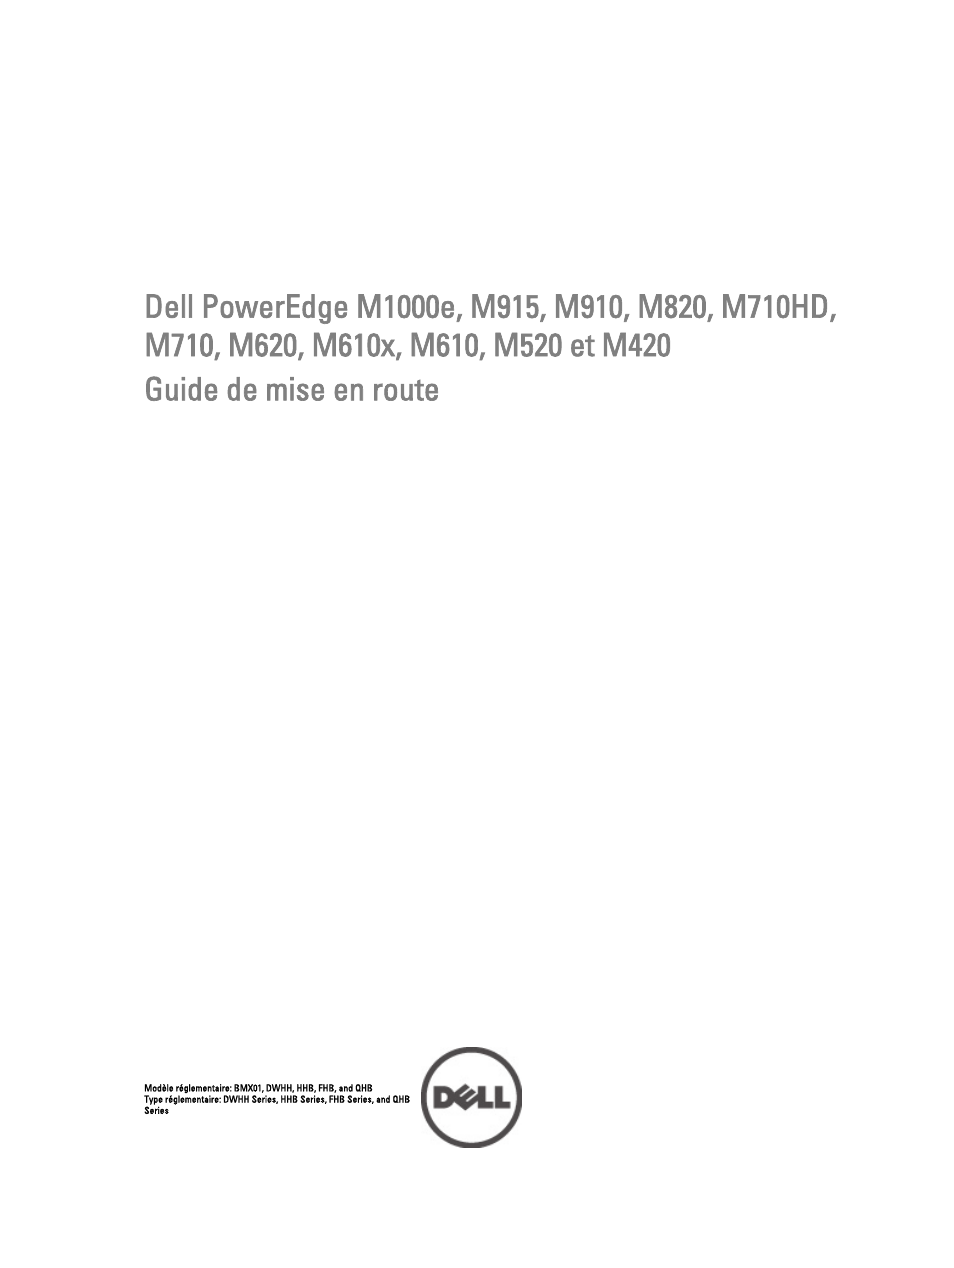 Dell PowerEdge M610x Manuel d'utilisation | Pages: 12